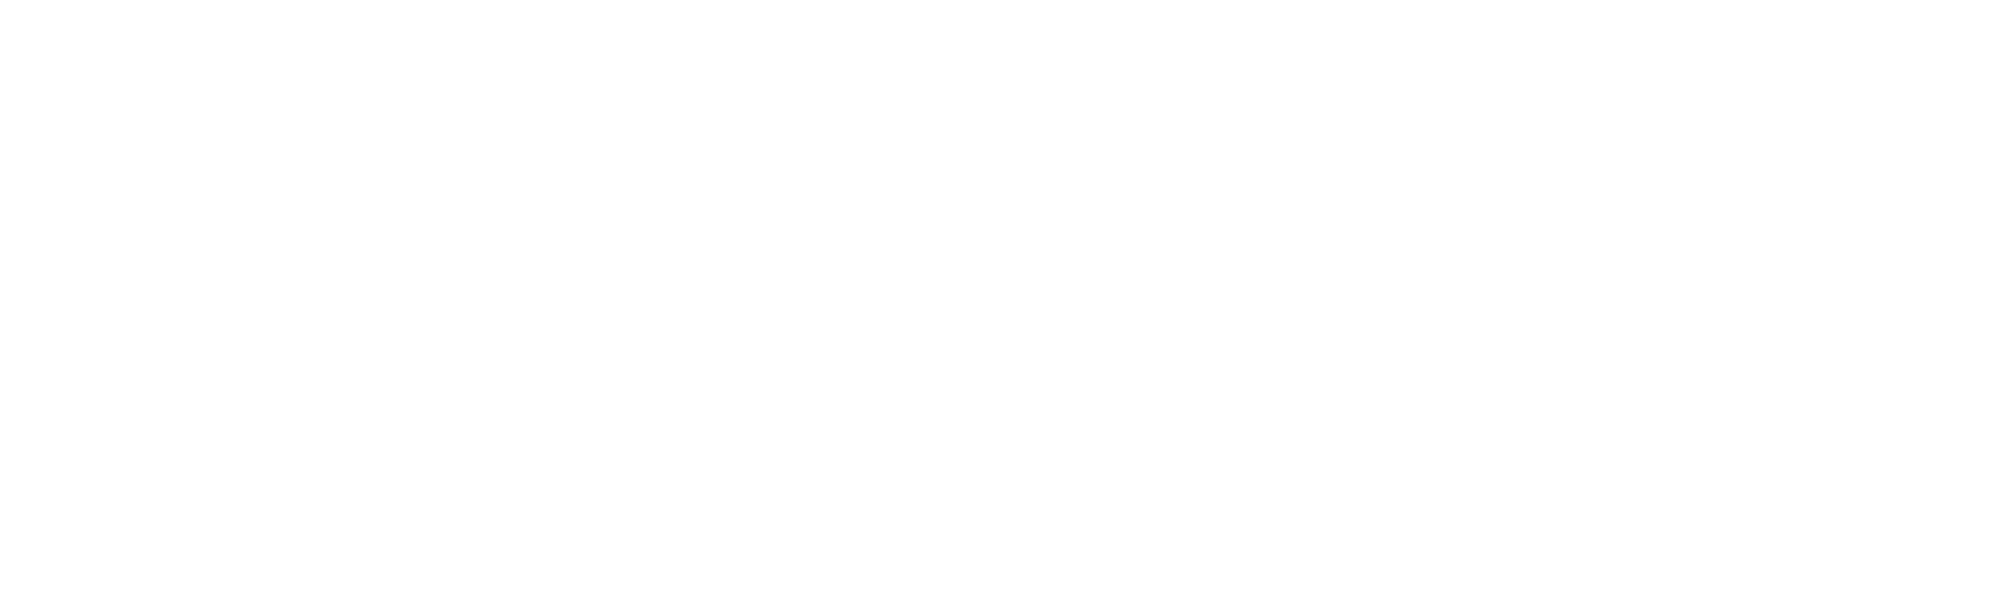 Nova Gorica und Gorizia, die grenzüberschreitende Kulturhauptstadt Europas 2025